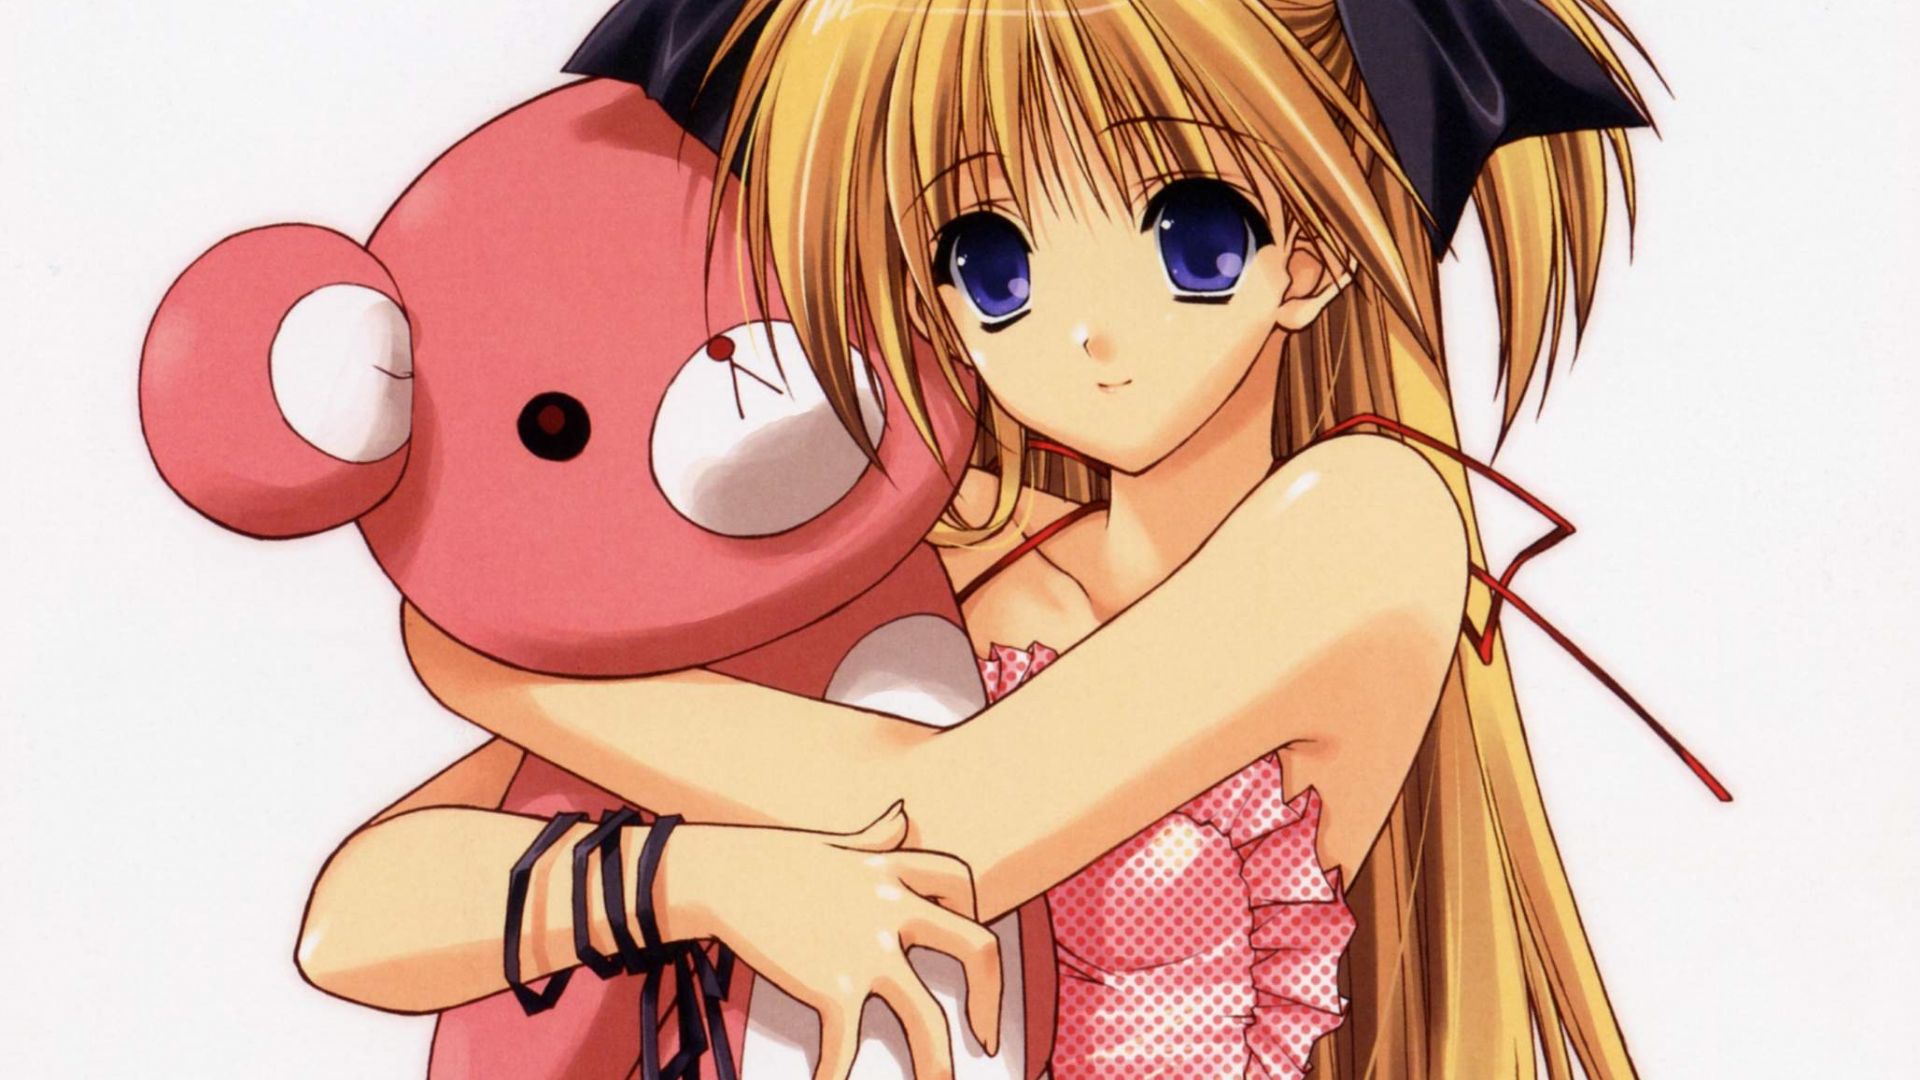 Anime Hug GIF  Anime Hug Teddy Bear  Discover  Share GIFs